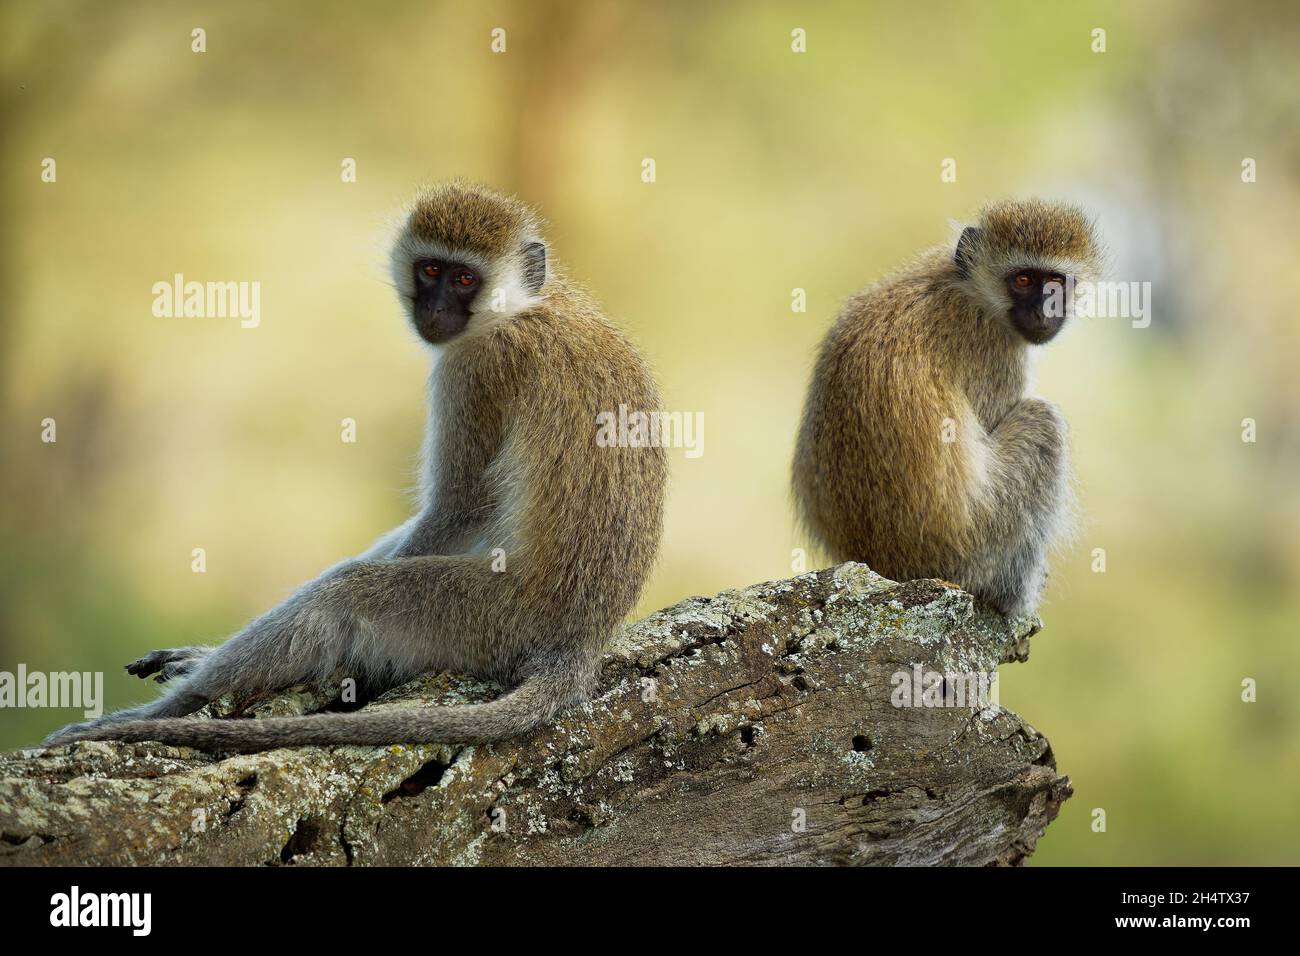 Scimmia Vervet - Chlorocebus pygerythrus - due scimmie di Cercopithecidae nativo dell'Africa, simile a malbrouck (Chlorocebus cynosuros), seduto sul Th Foto Stock